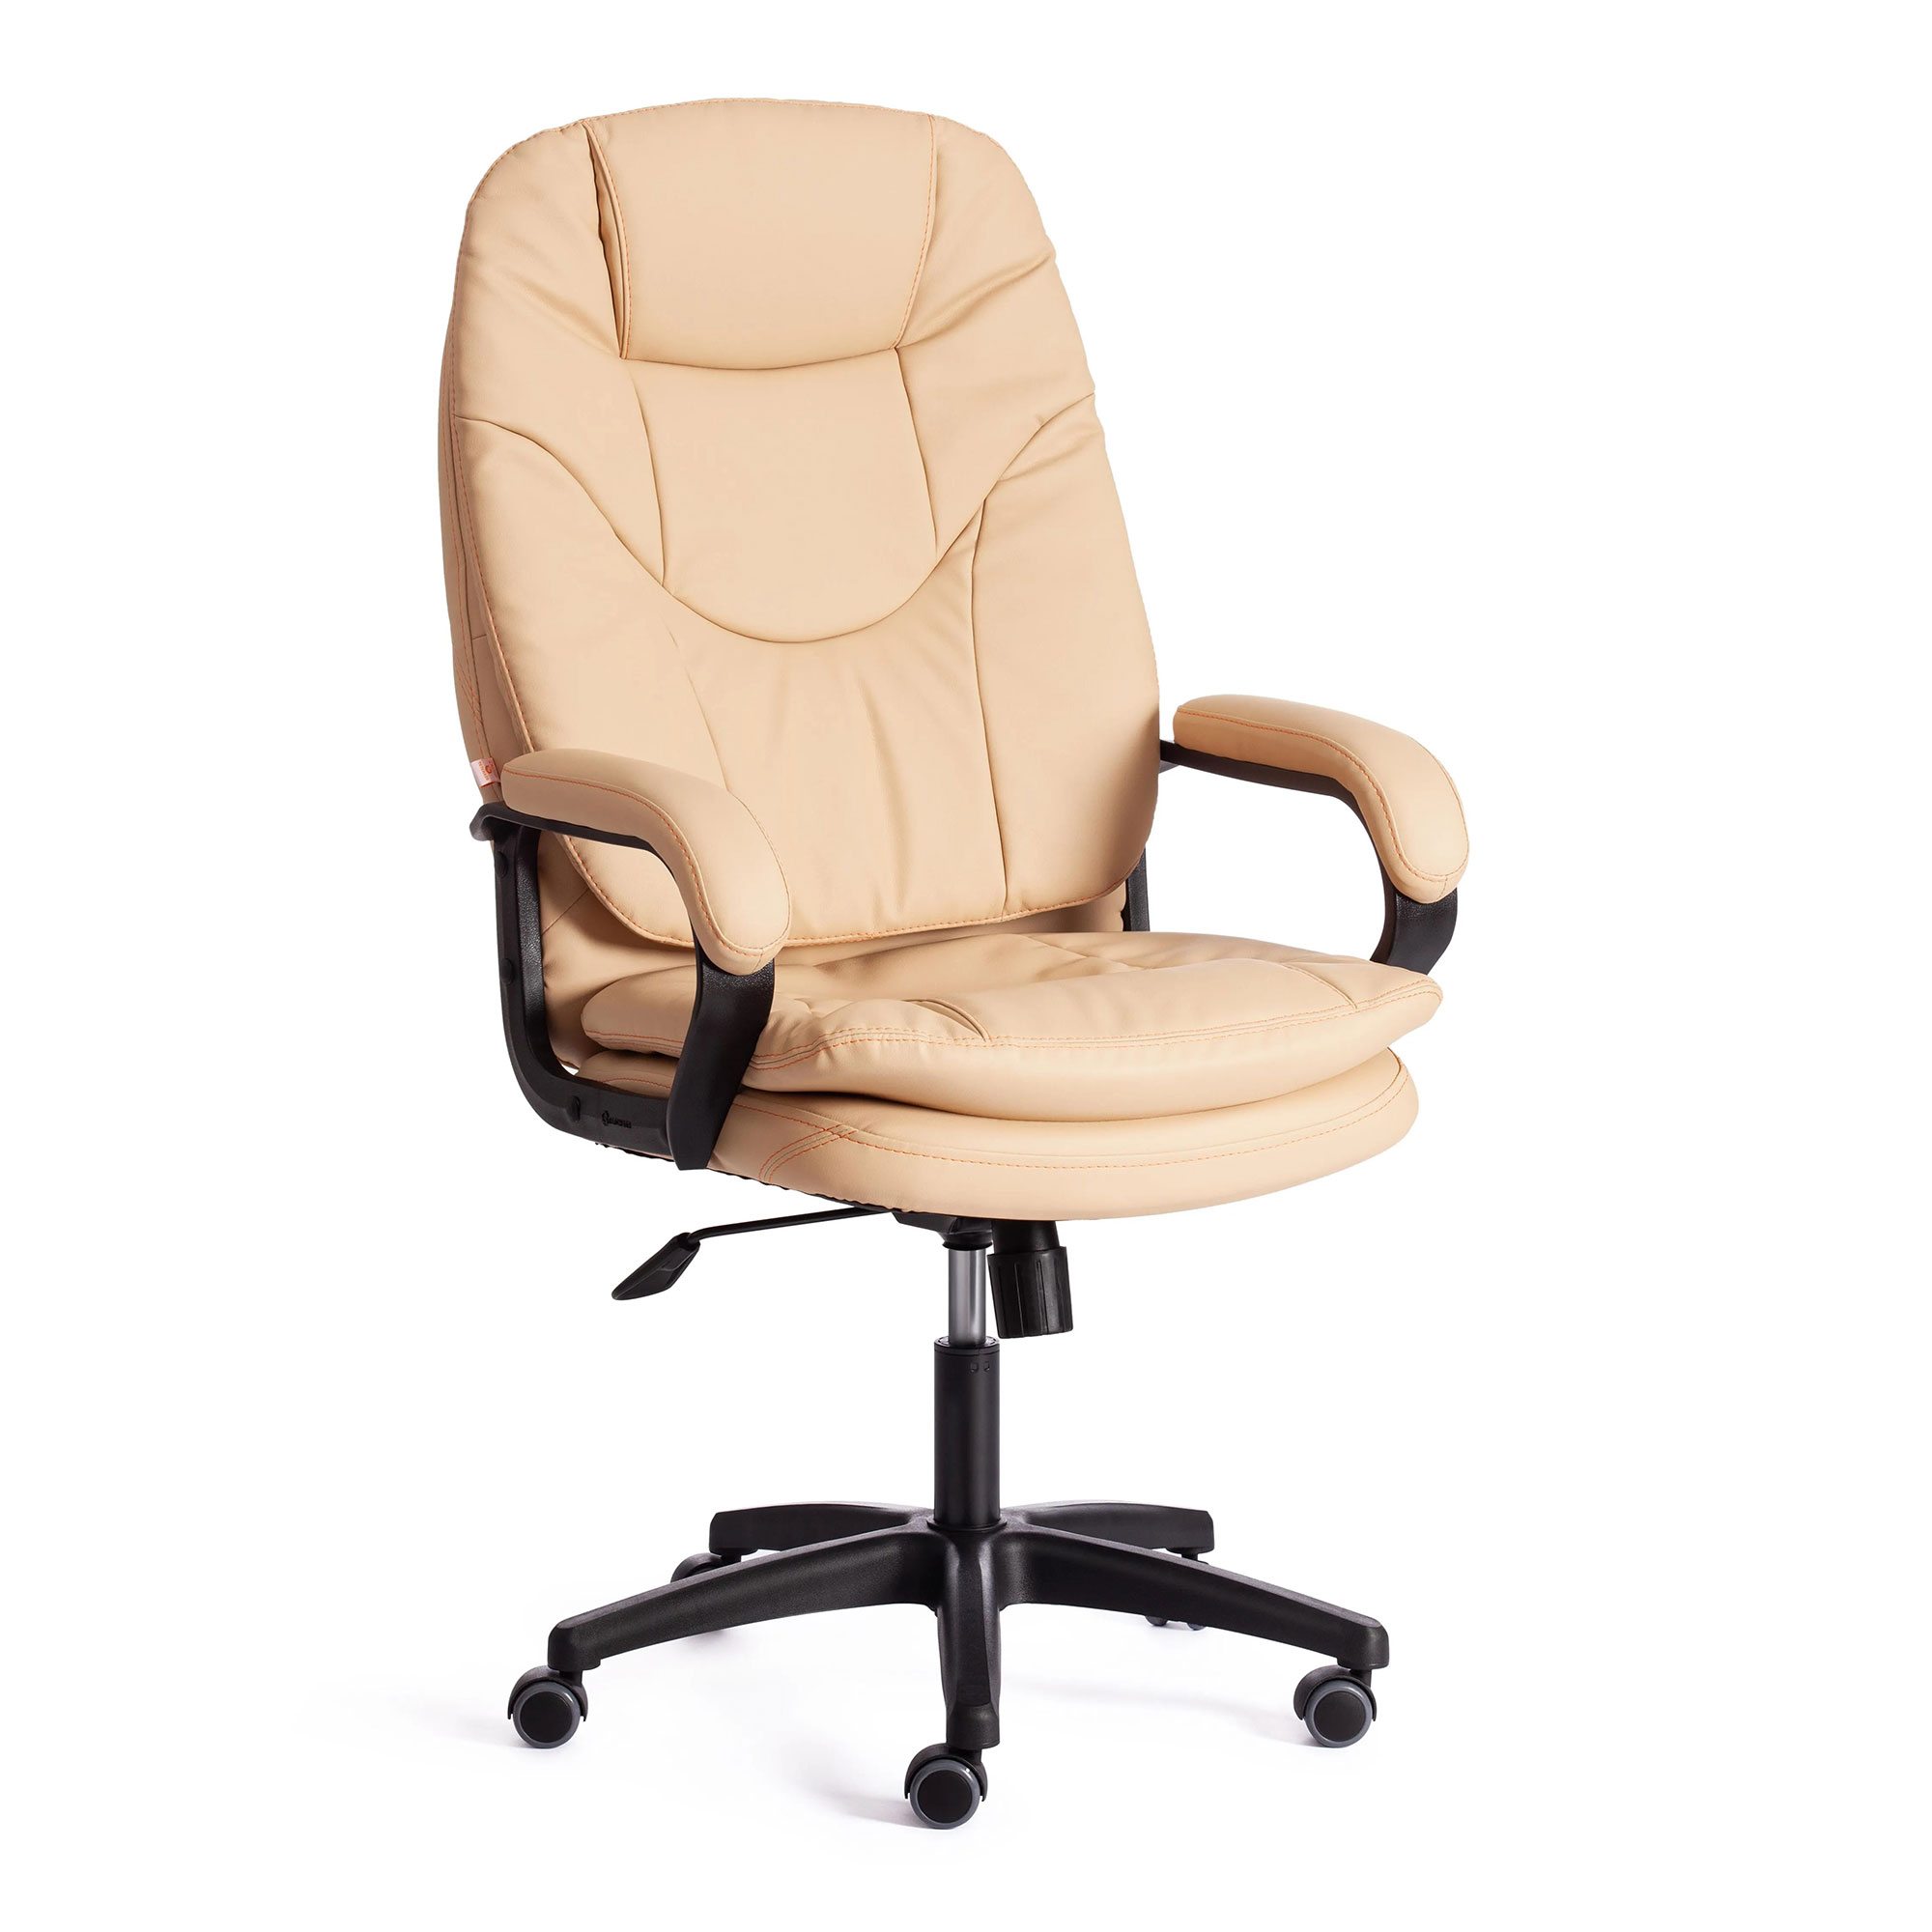 Компьютерное кресло TC Comfort бежевое 66х46х133 см (19378) кресло dreambag comfort коричневое экокожа 150x90 см